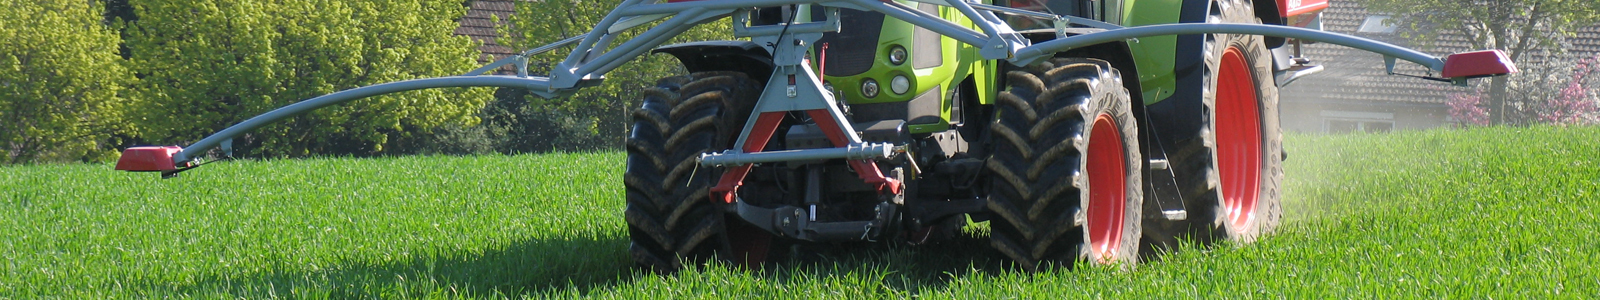 Traktor mit ausgefahrenen Sensoren ©DLR